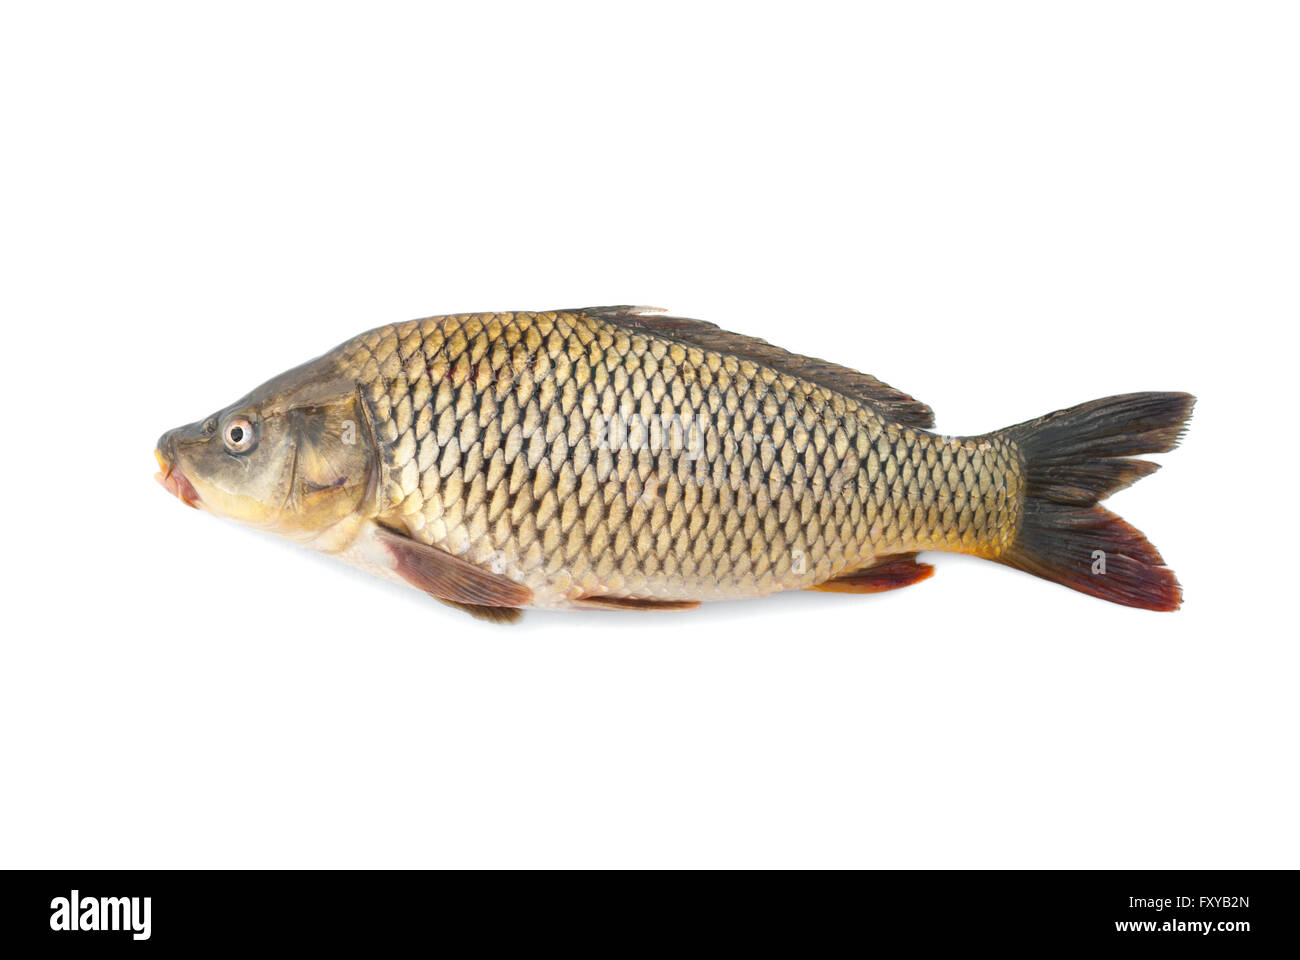 Karpfen-Fluss lebenden Fischen auf einem weißen Hintergrund. Stockfoto